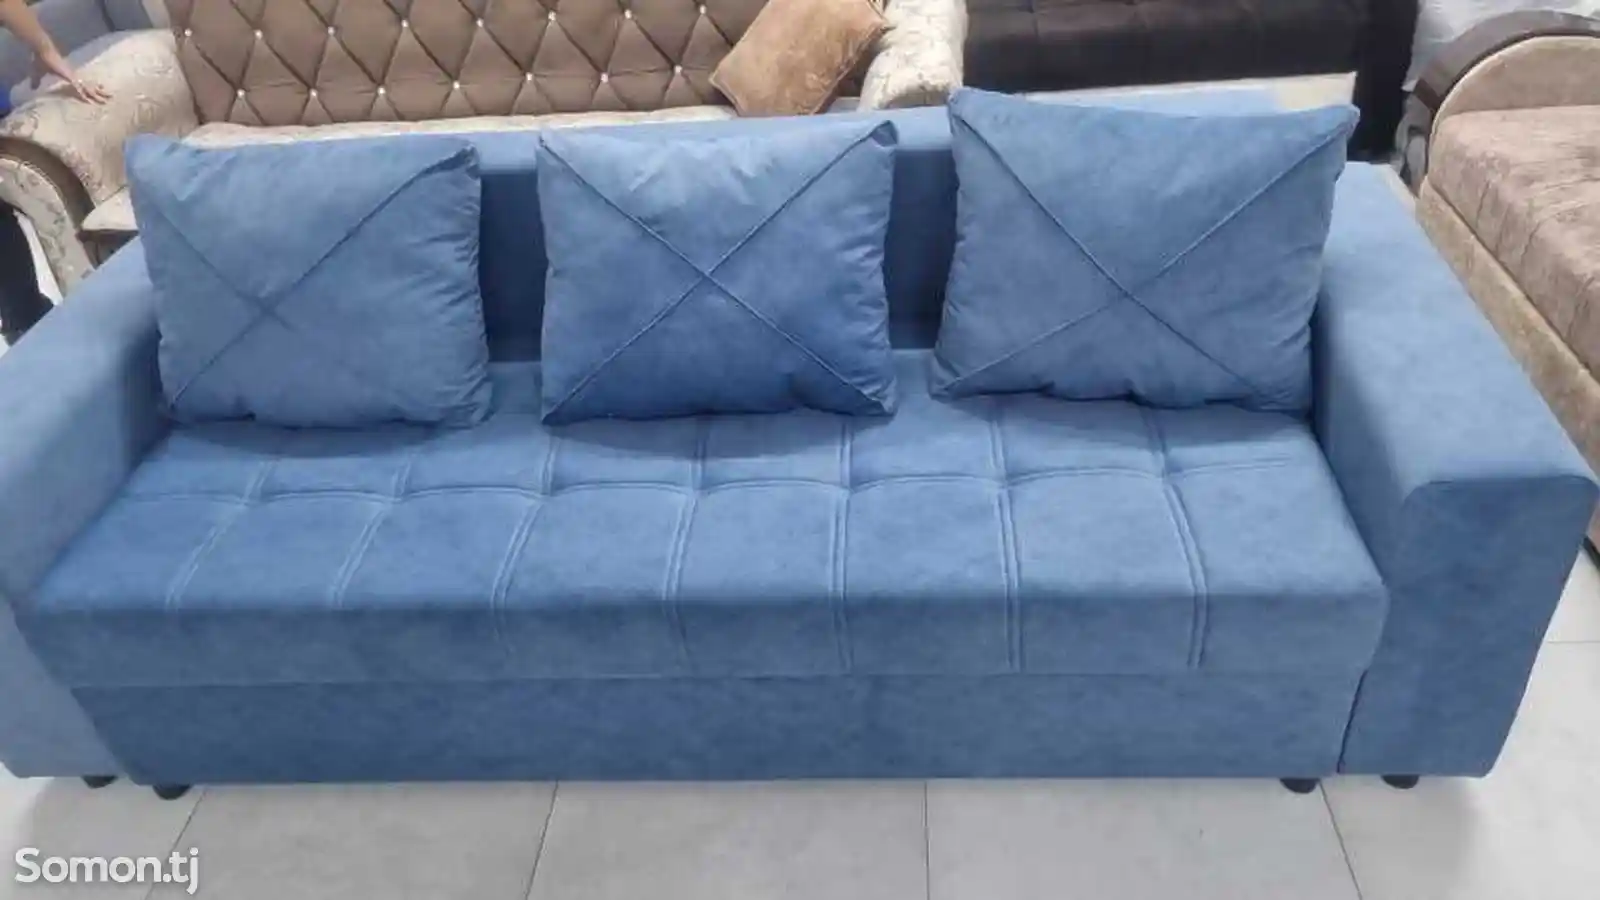 Раскладной диван с подушками